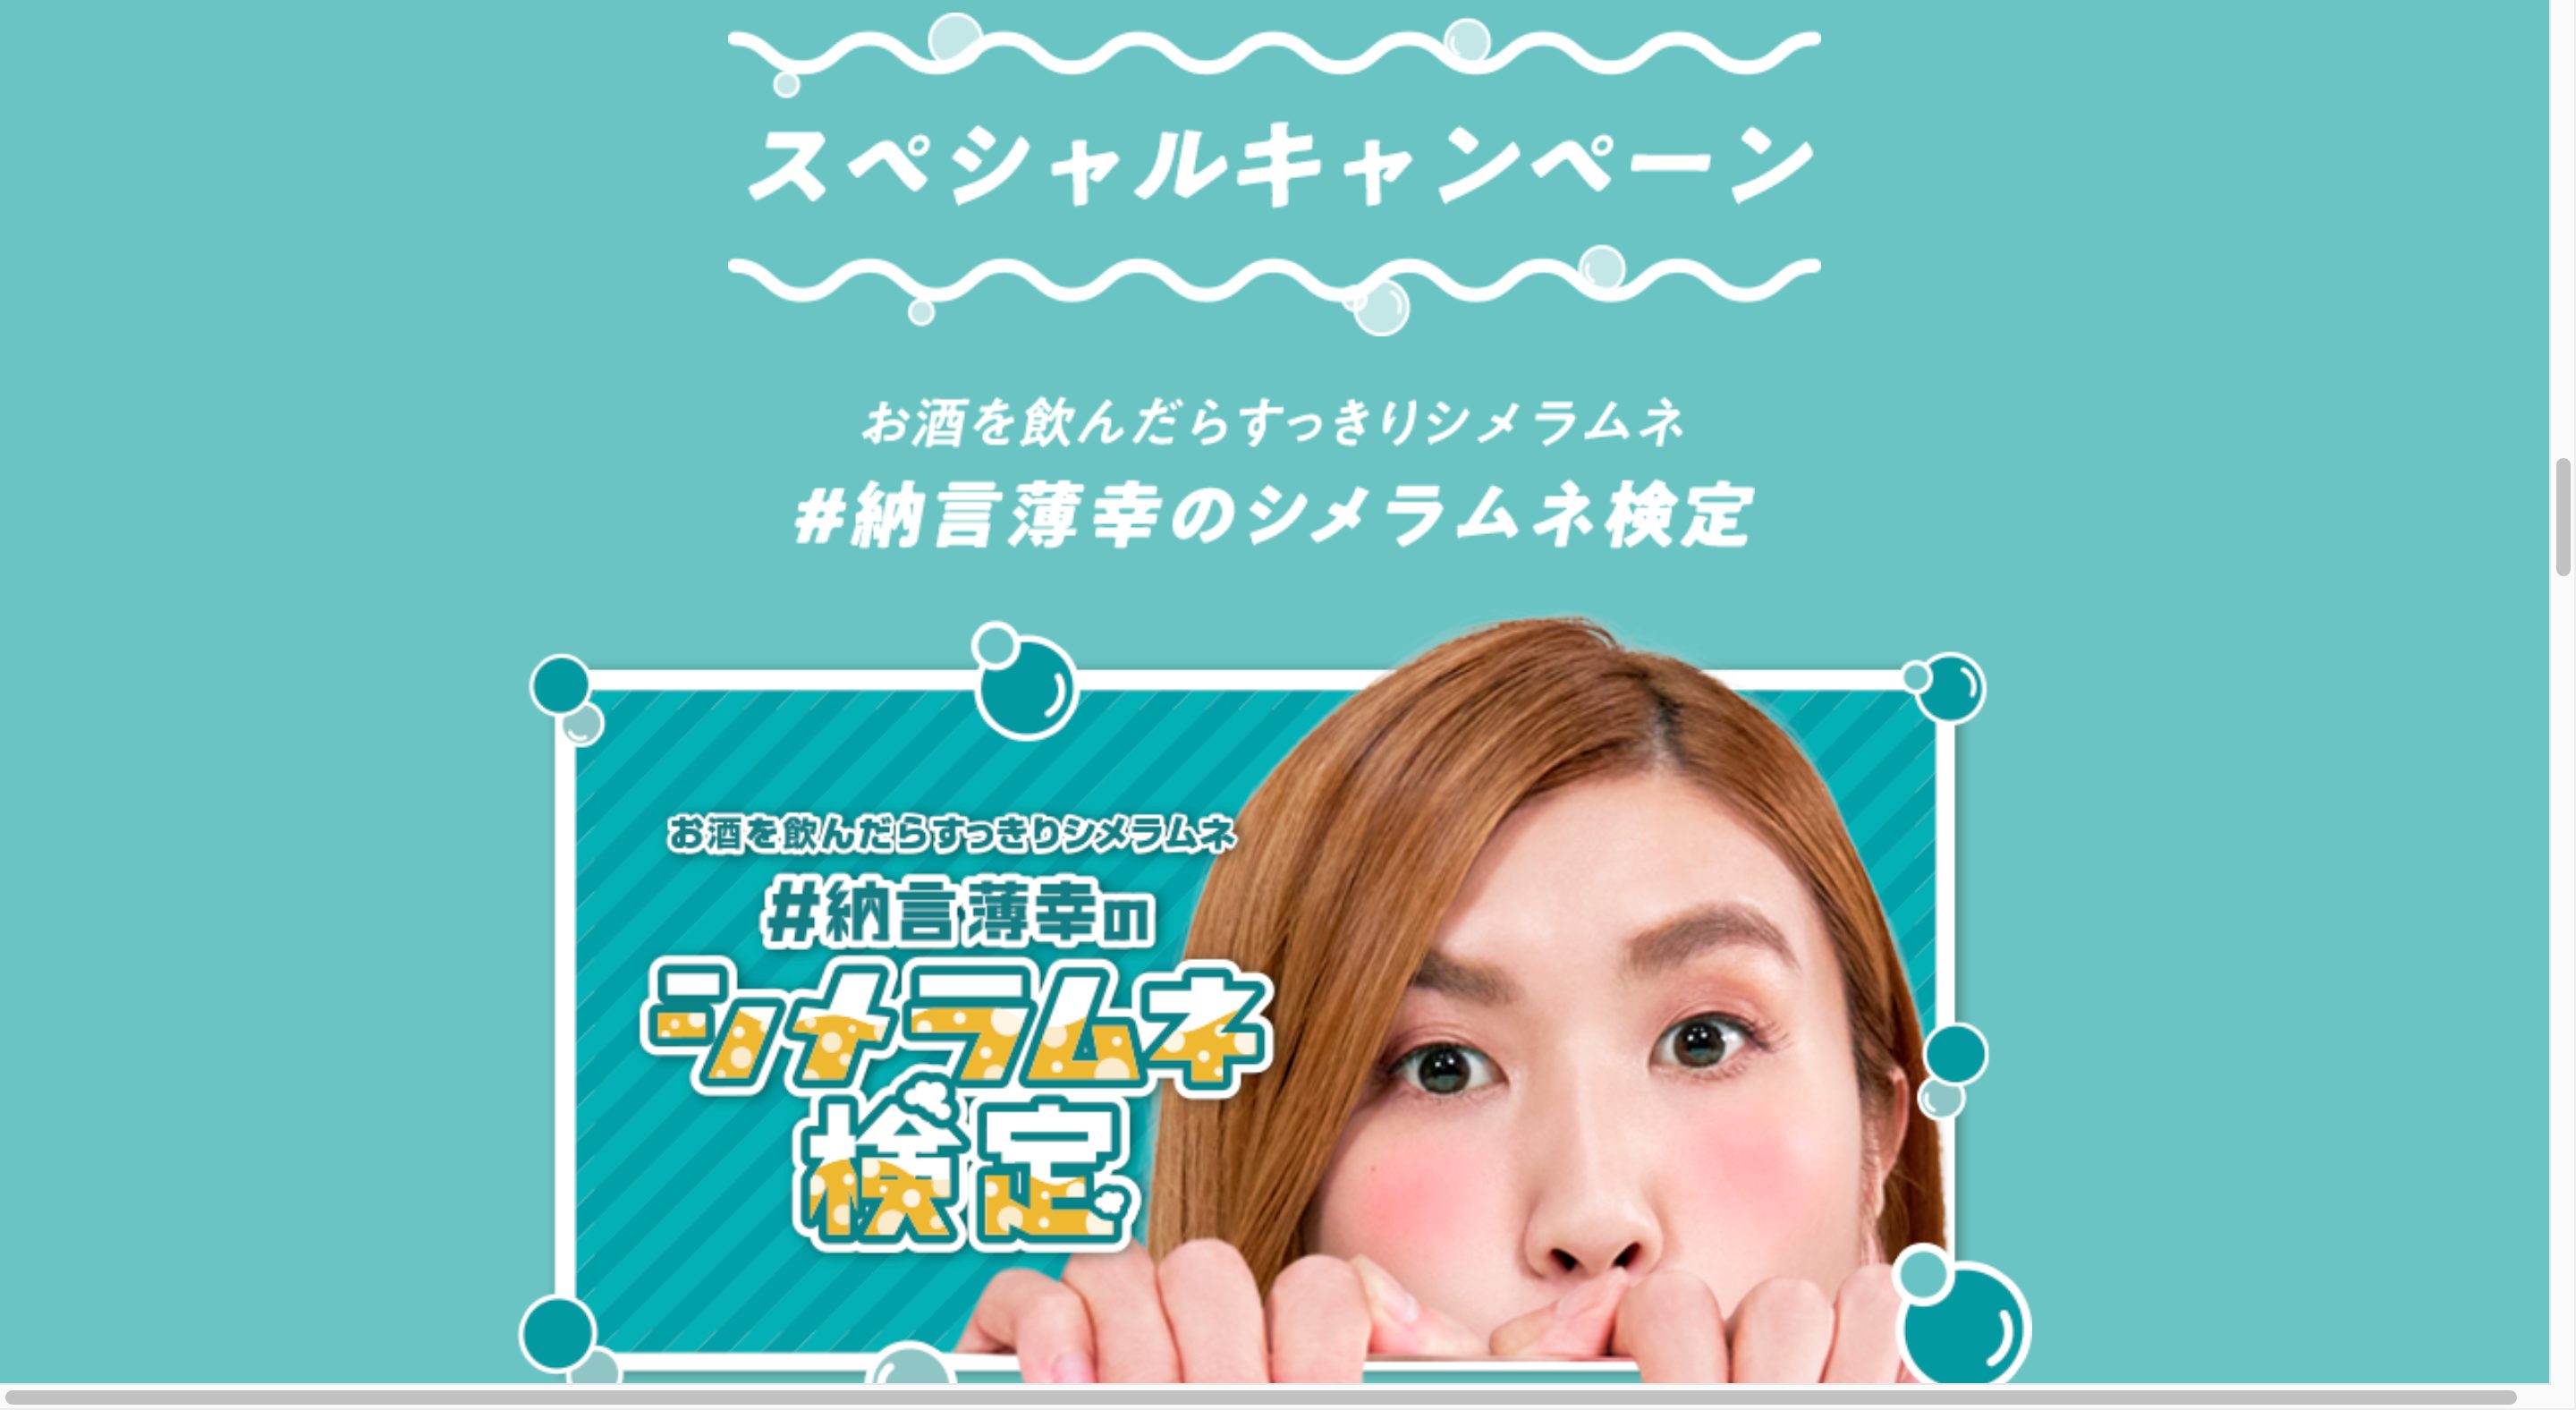 飲んだ後にはすっきりシメラムネ | 森永製菓キャンペーン画像